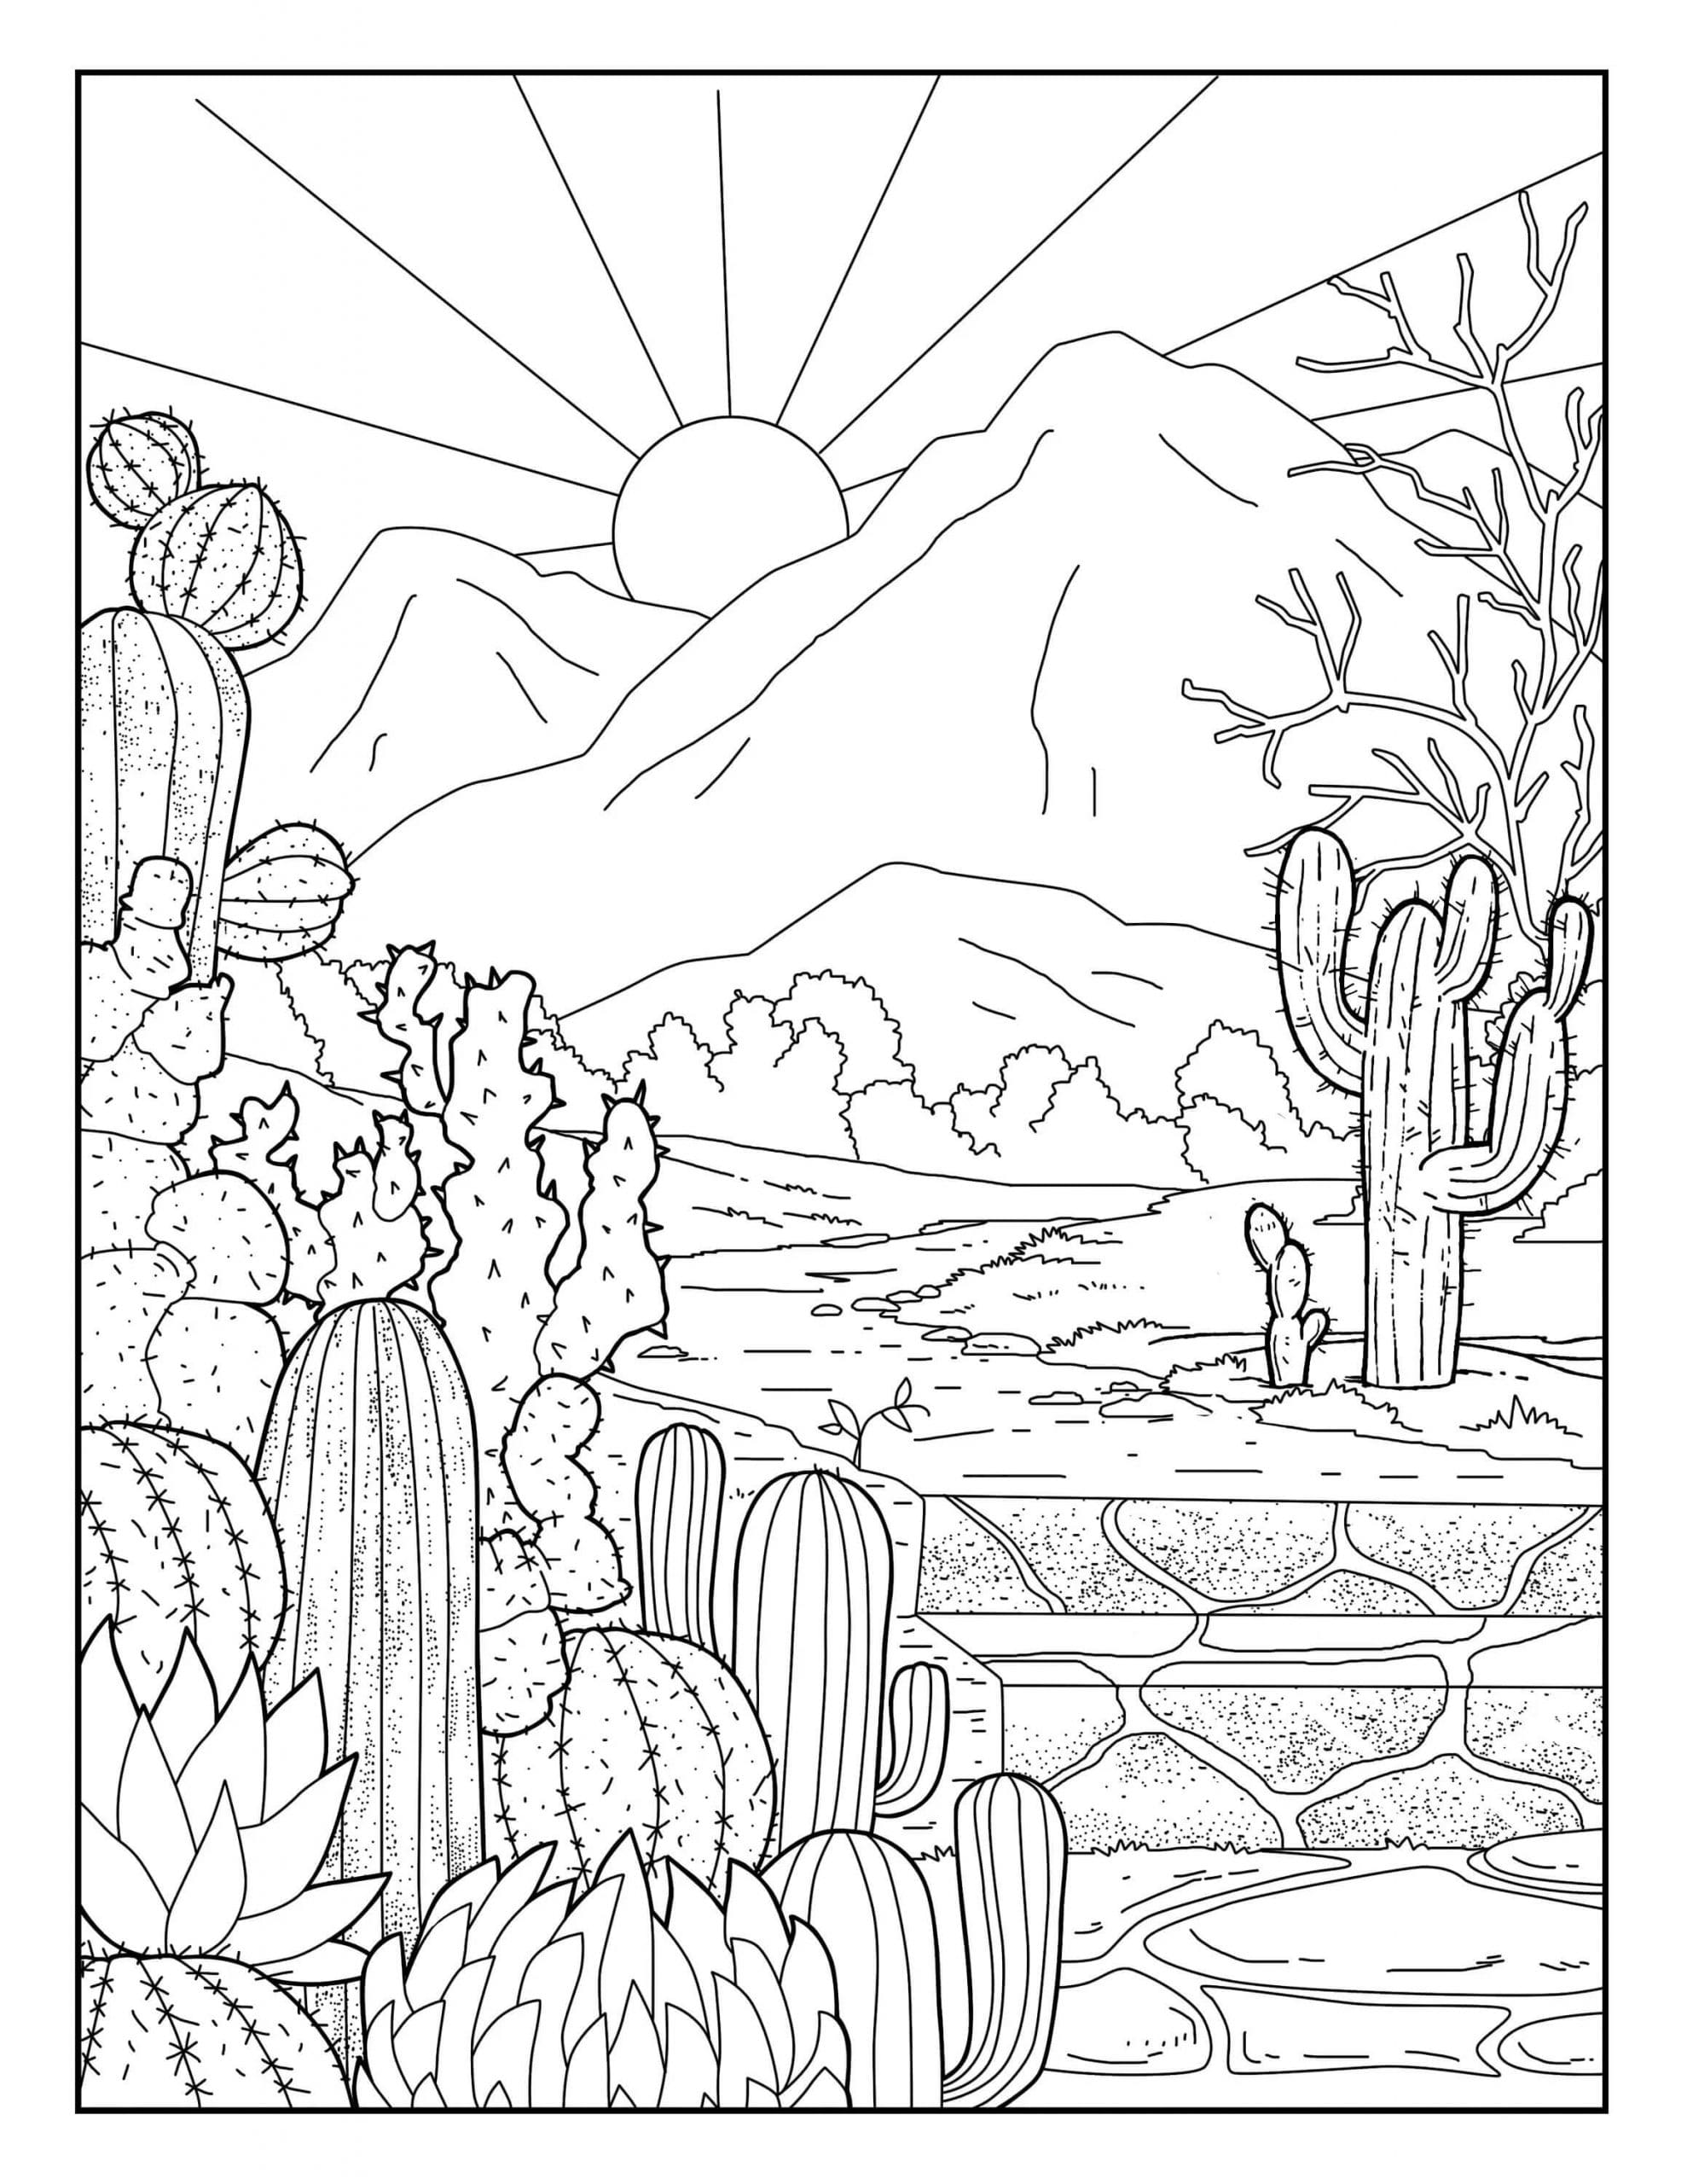 Kolorowanki Ogród kaktusów i słońce